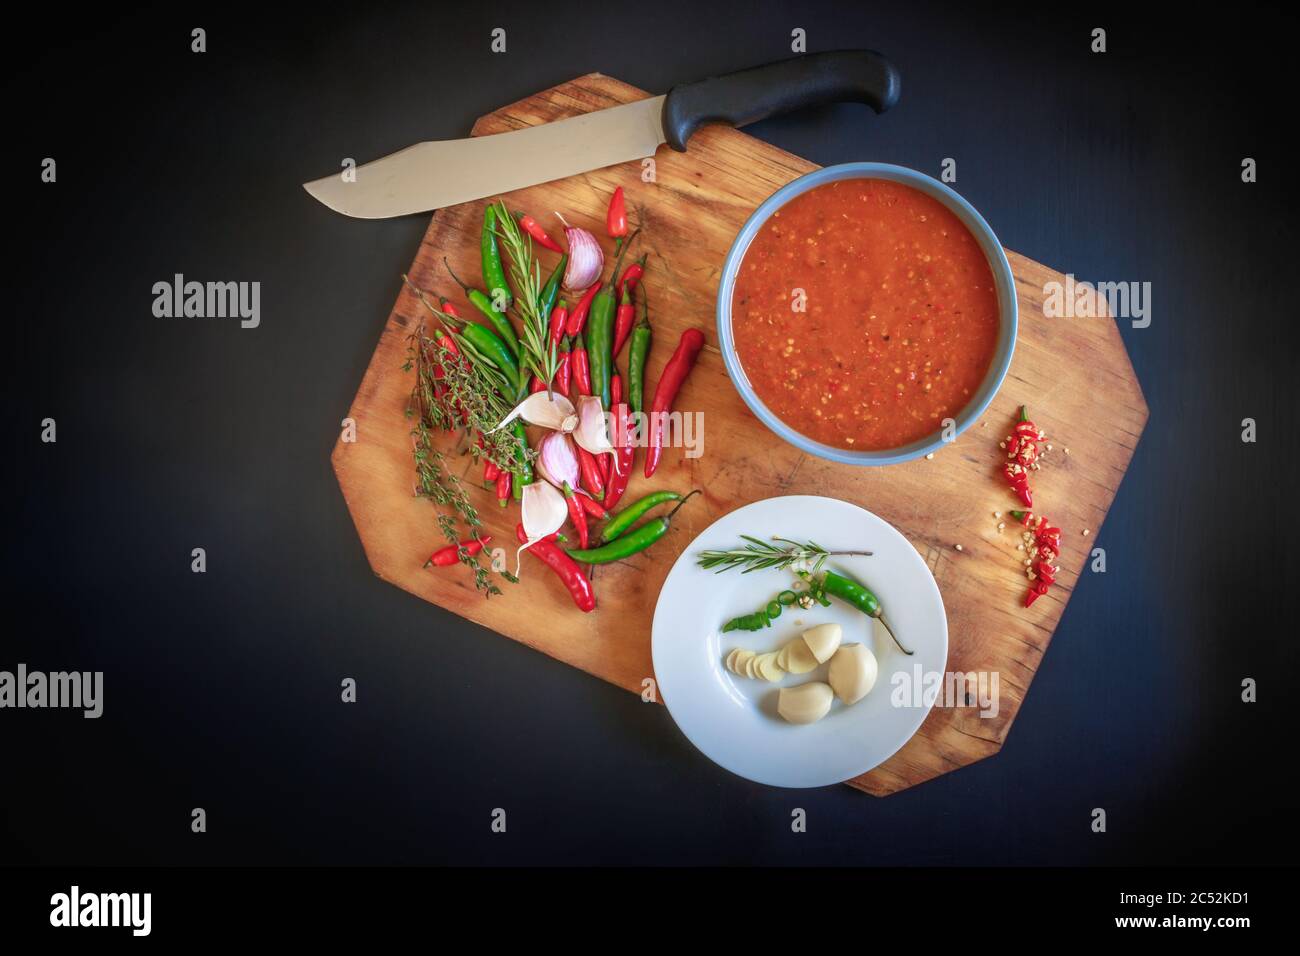 Hot Red Chili Sauce in einer blauen Schüssel serviert, mit Chili's, Knoblauch, und Kräuter zubereitet, auf einem schwarzen strukturierten Hintergrund Stockfoto